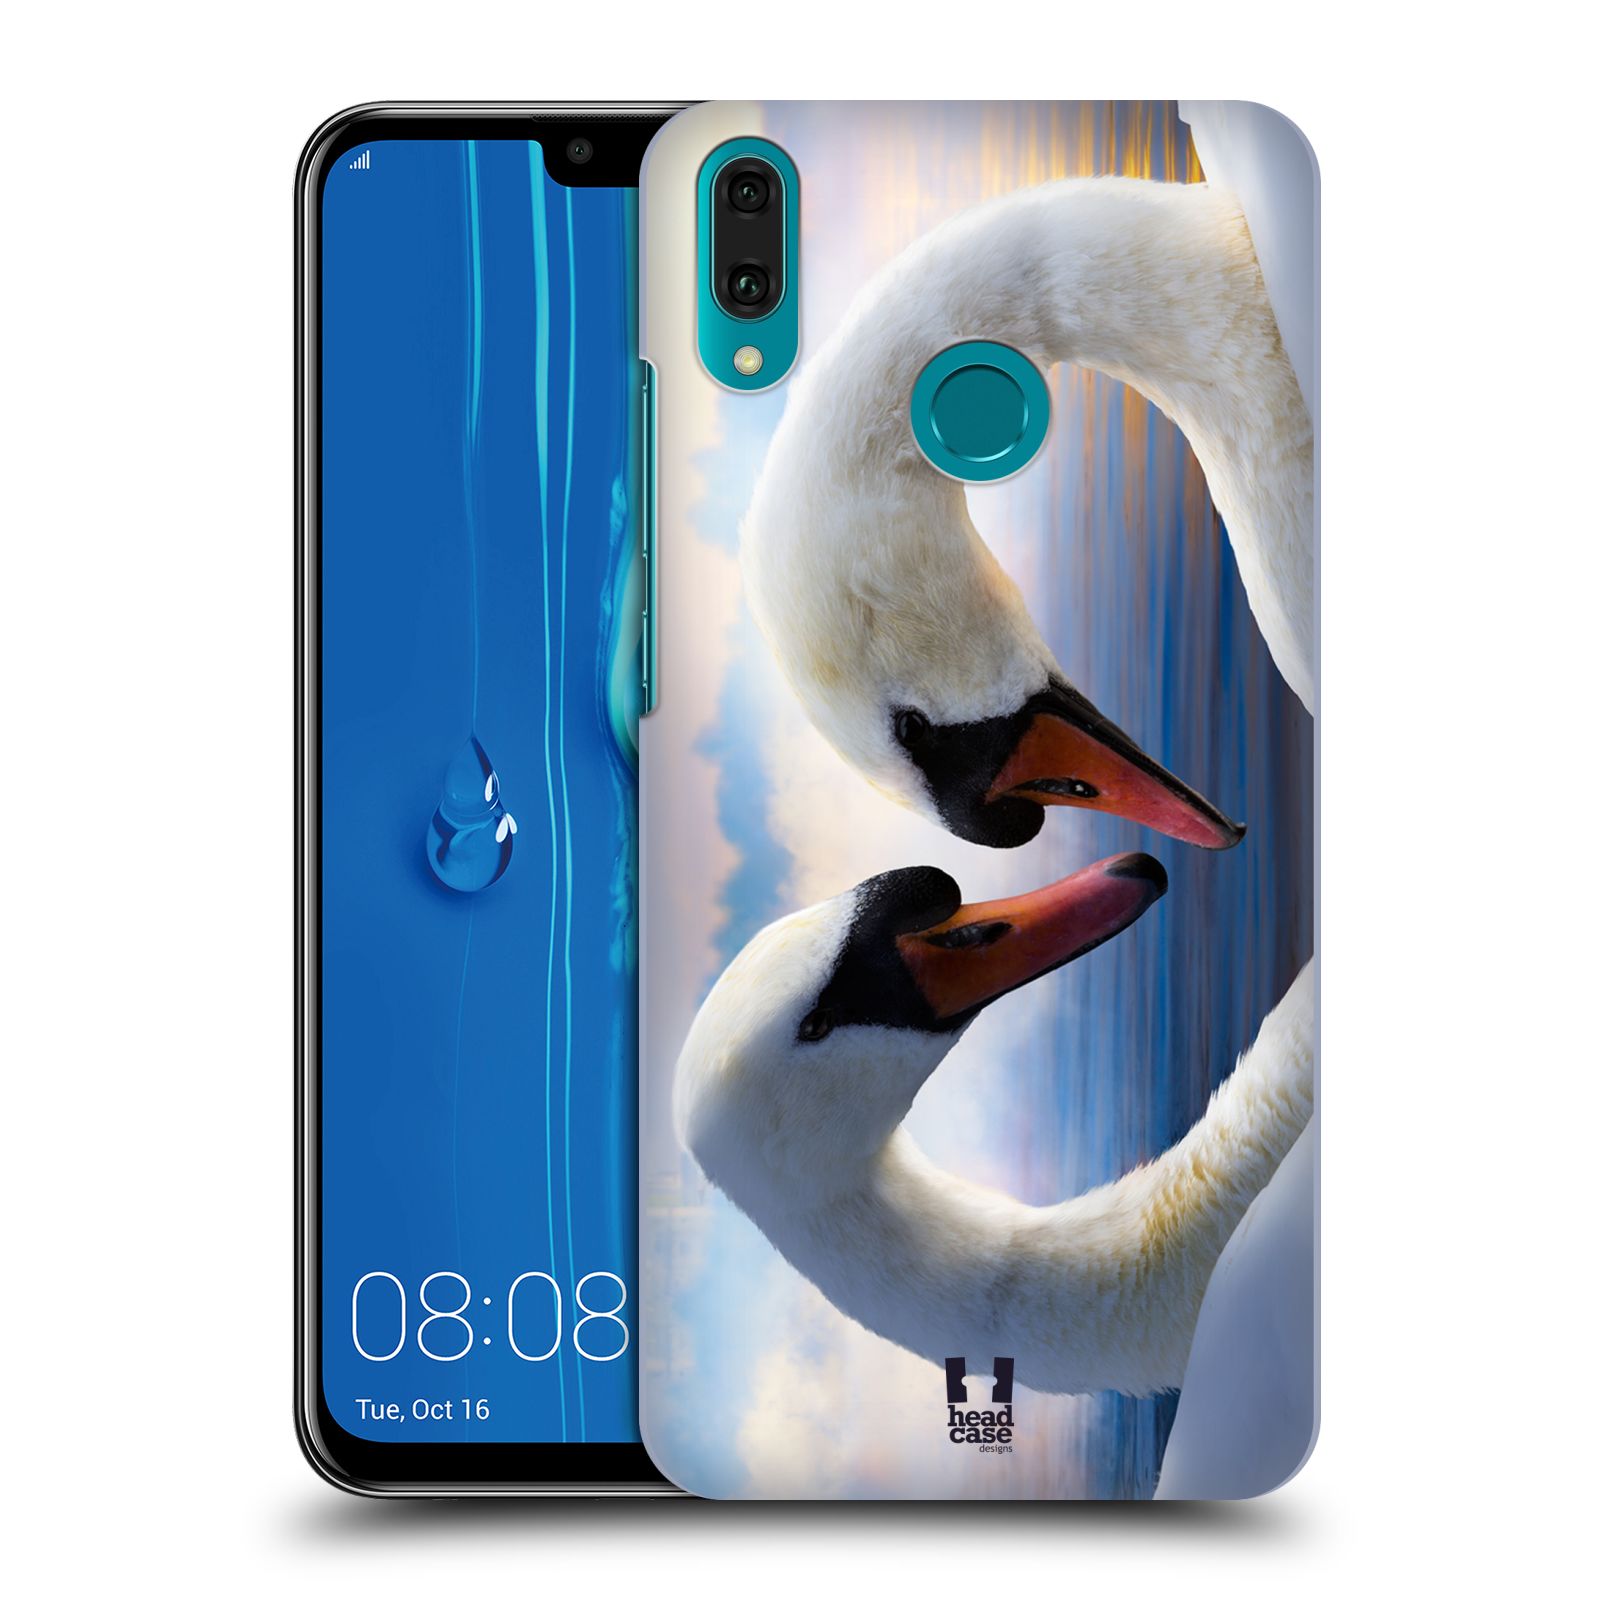 Pouzdro na mobil Huawei Y9 2019 - HEAD CASE - vzor Divočina, Divoký život a zvířata foto ZAMILOVANÉ LABUTĚ, LÁSKA